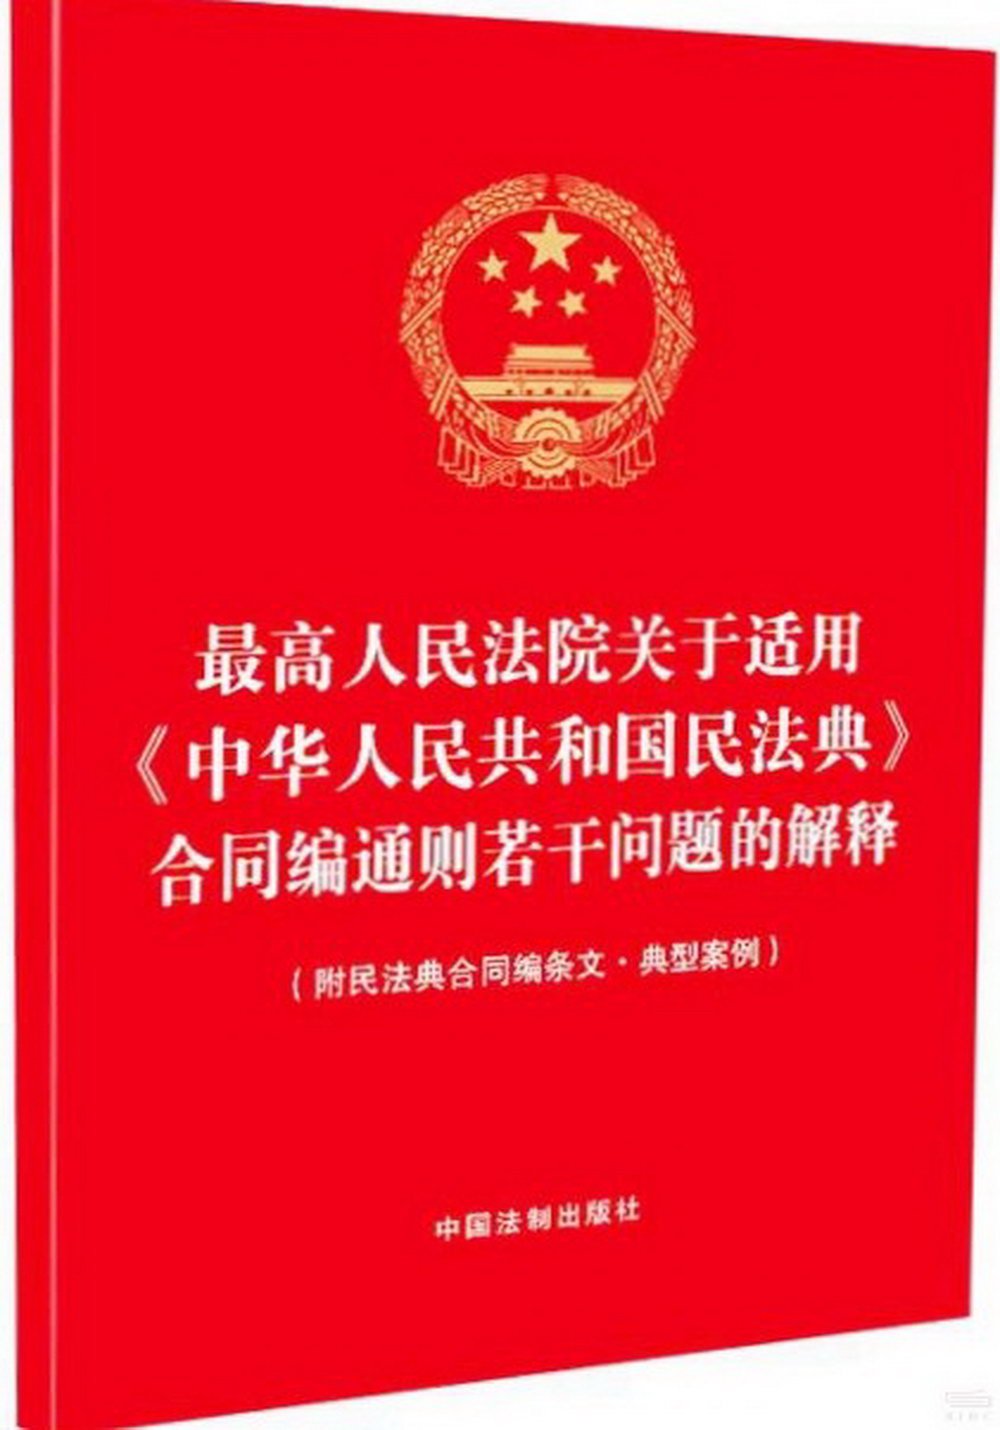 最高人民法院關於適用《中華人民共和國民法典》合同編通則若干問題的解釋（附民法典合同編條文·典型案例）